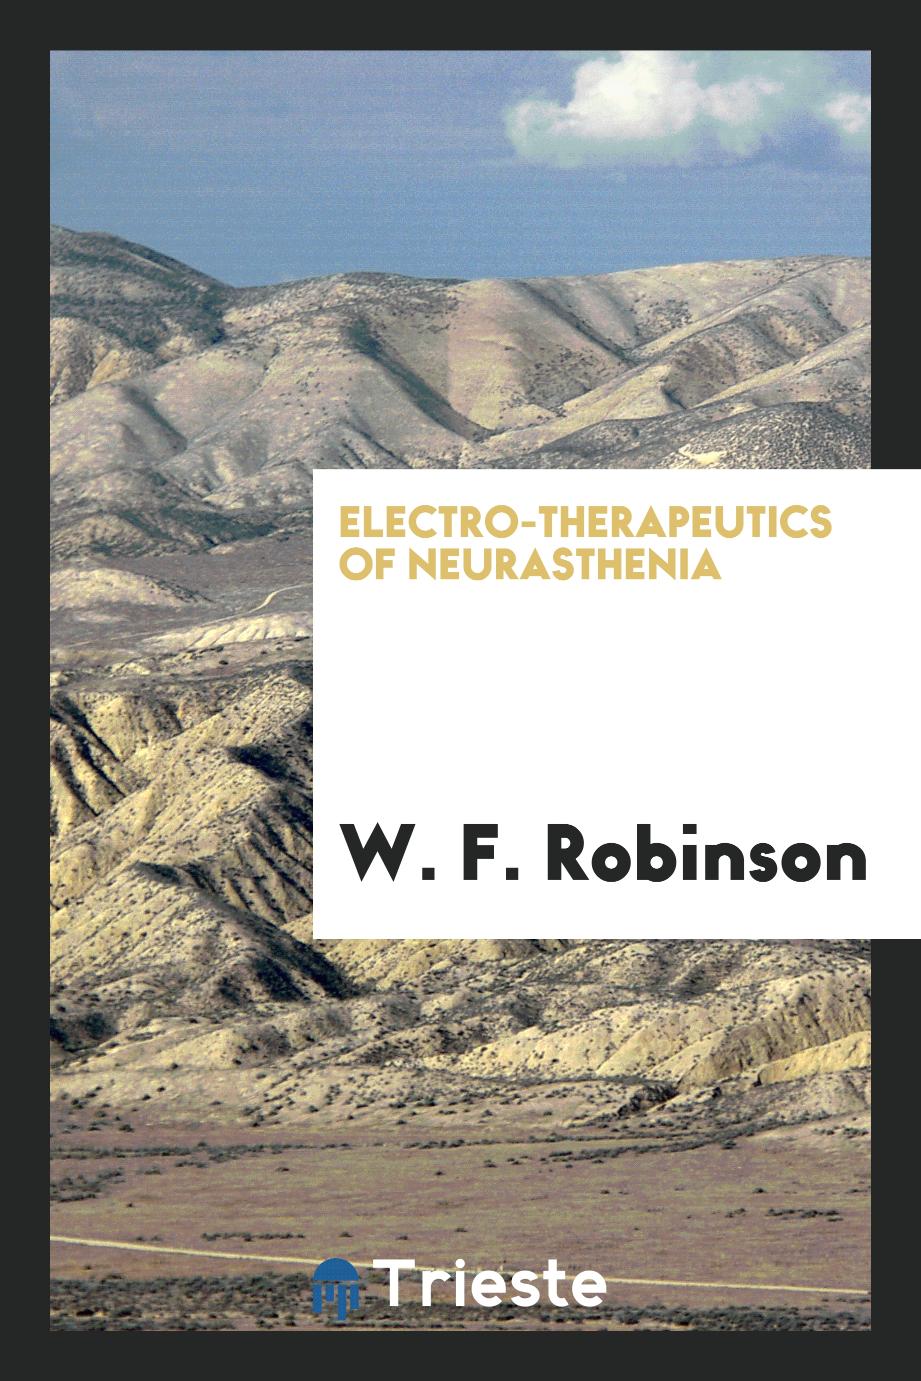 Electro-therapeutics of Neurasthenia